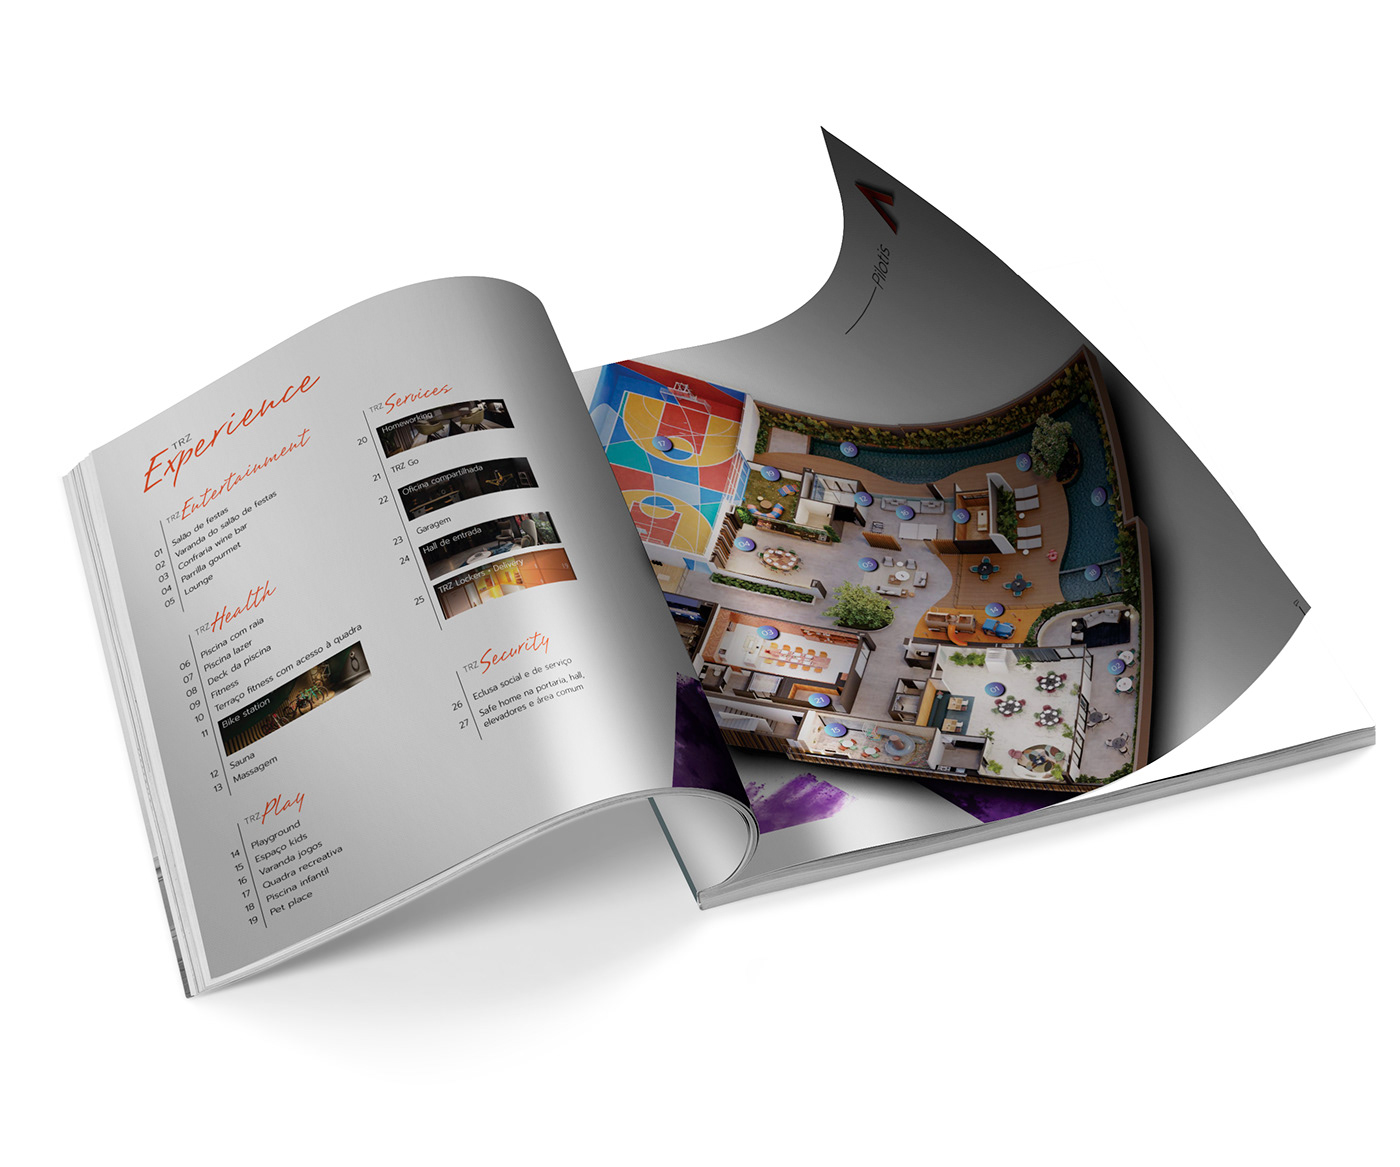 composition real estate visual identity book marketing imobiliário belo horizonte construção civil photoshop